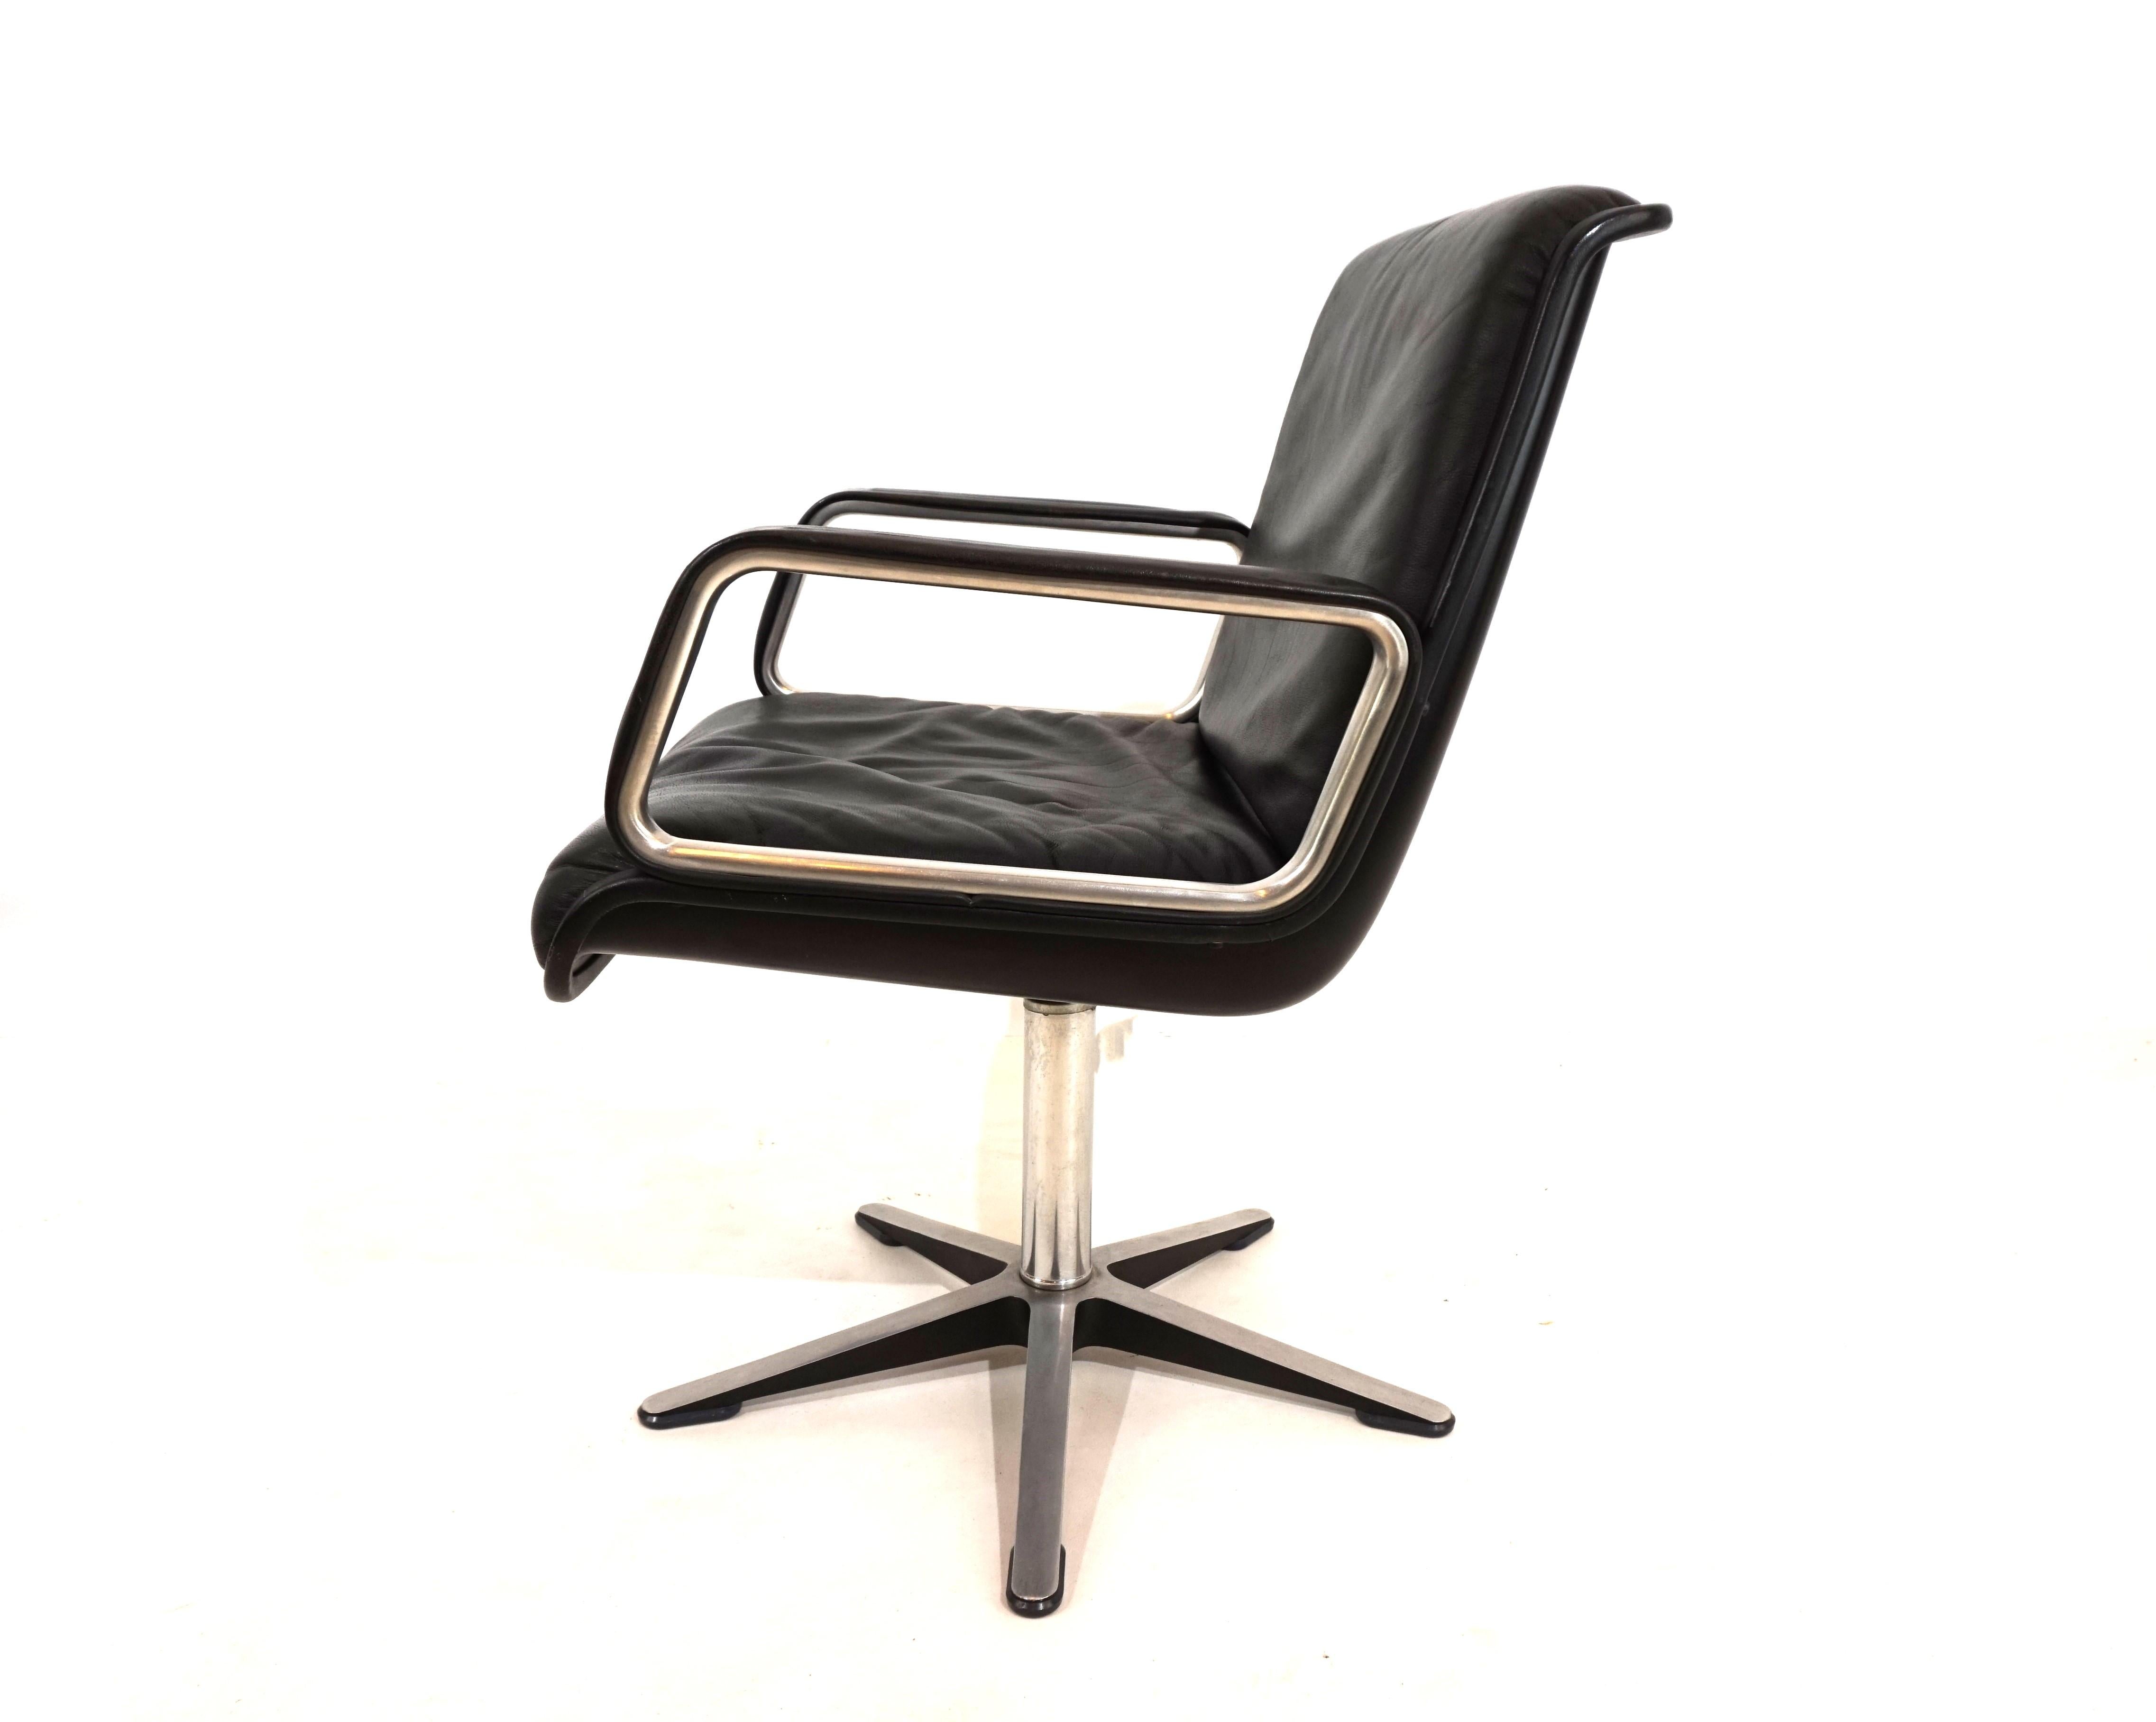 Un fauteuil en cuir Wilkhahn Delta 2000 de dernière génération, avec accoudoirs recouverts de cuir, dans un ton de cuir noir profond, aluminium brossé et coques noires, qui est en excellent état. Le cuir est impeccable, la coque en plastique et la